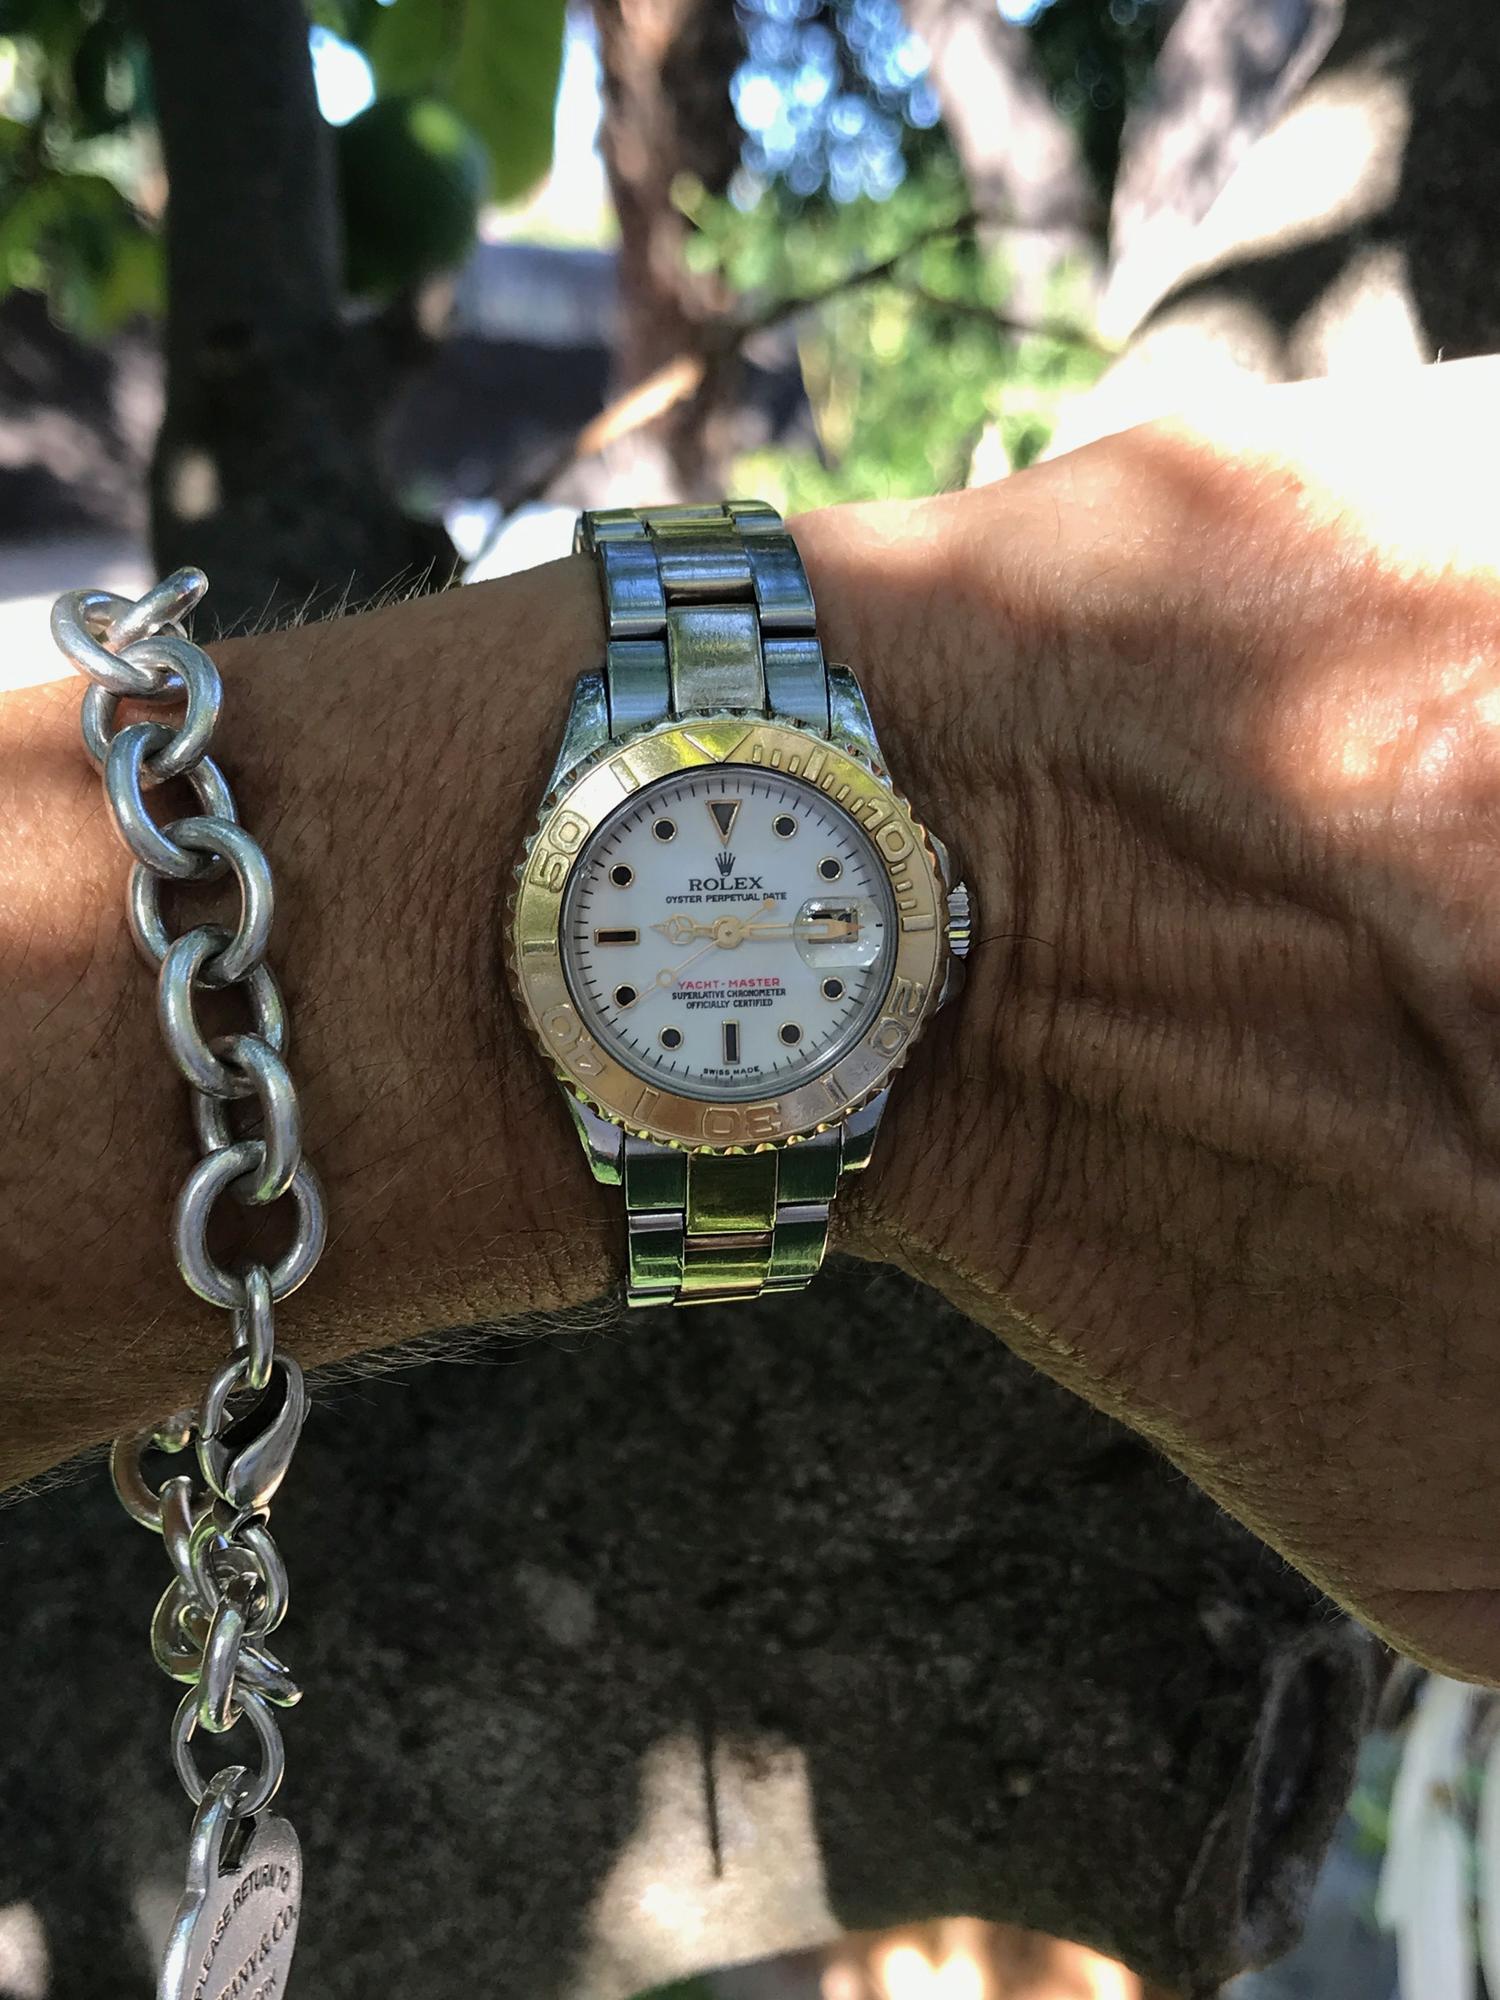 Die Luxusuhr präsentieren - Es ist verständlich, wenn man mit der teuren Uhr am Handgelenk prahlen möchte. Doch statt neidischer Blicke kann es auf der Insel schnell zu Übergriffen kommen. Mehrere sogenannte „Rolex-Banden“ haben sich auf Urlauber spezialisiert und reißen in Sekundenschnelle die Uhr vom Handgelenk.